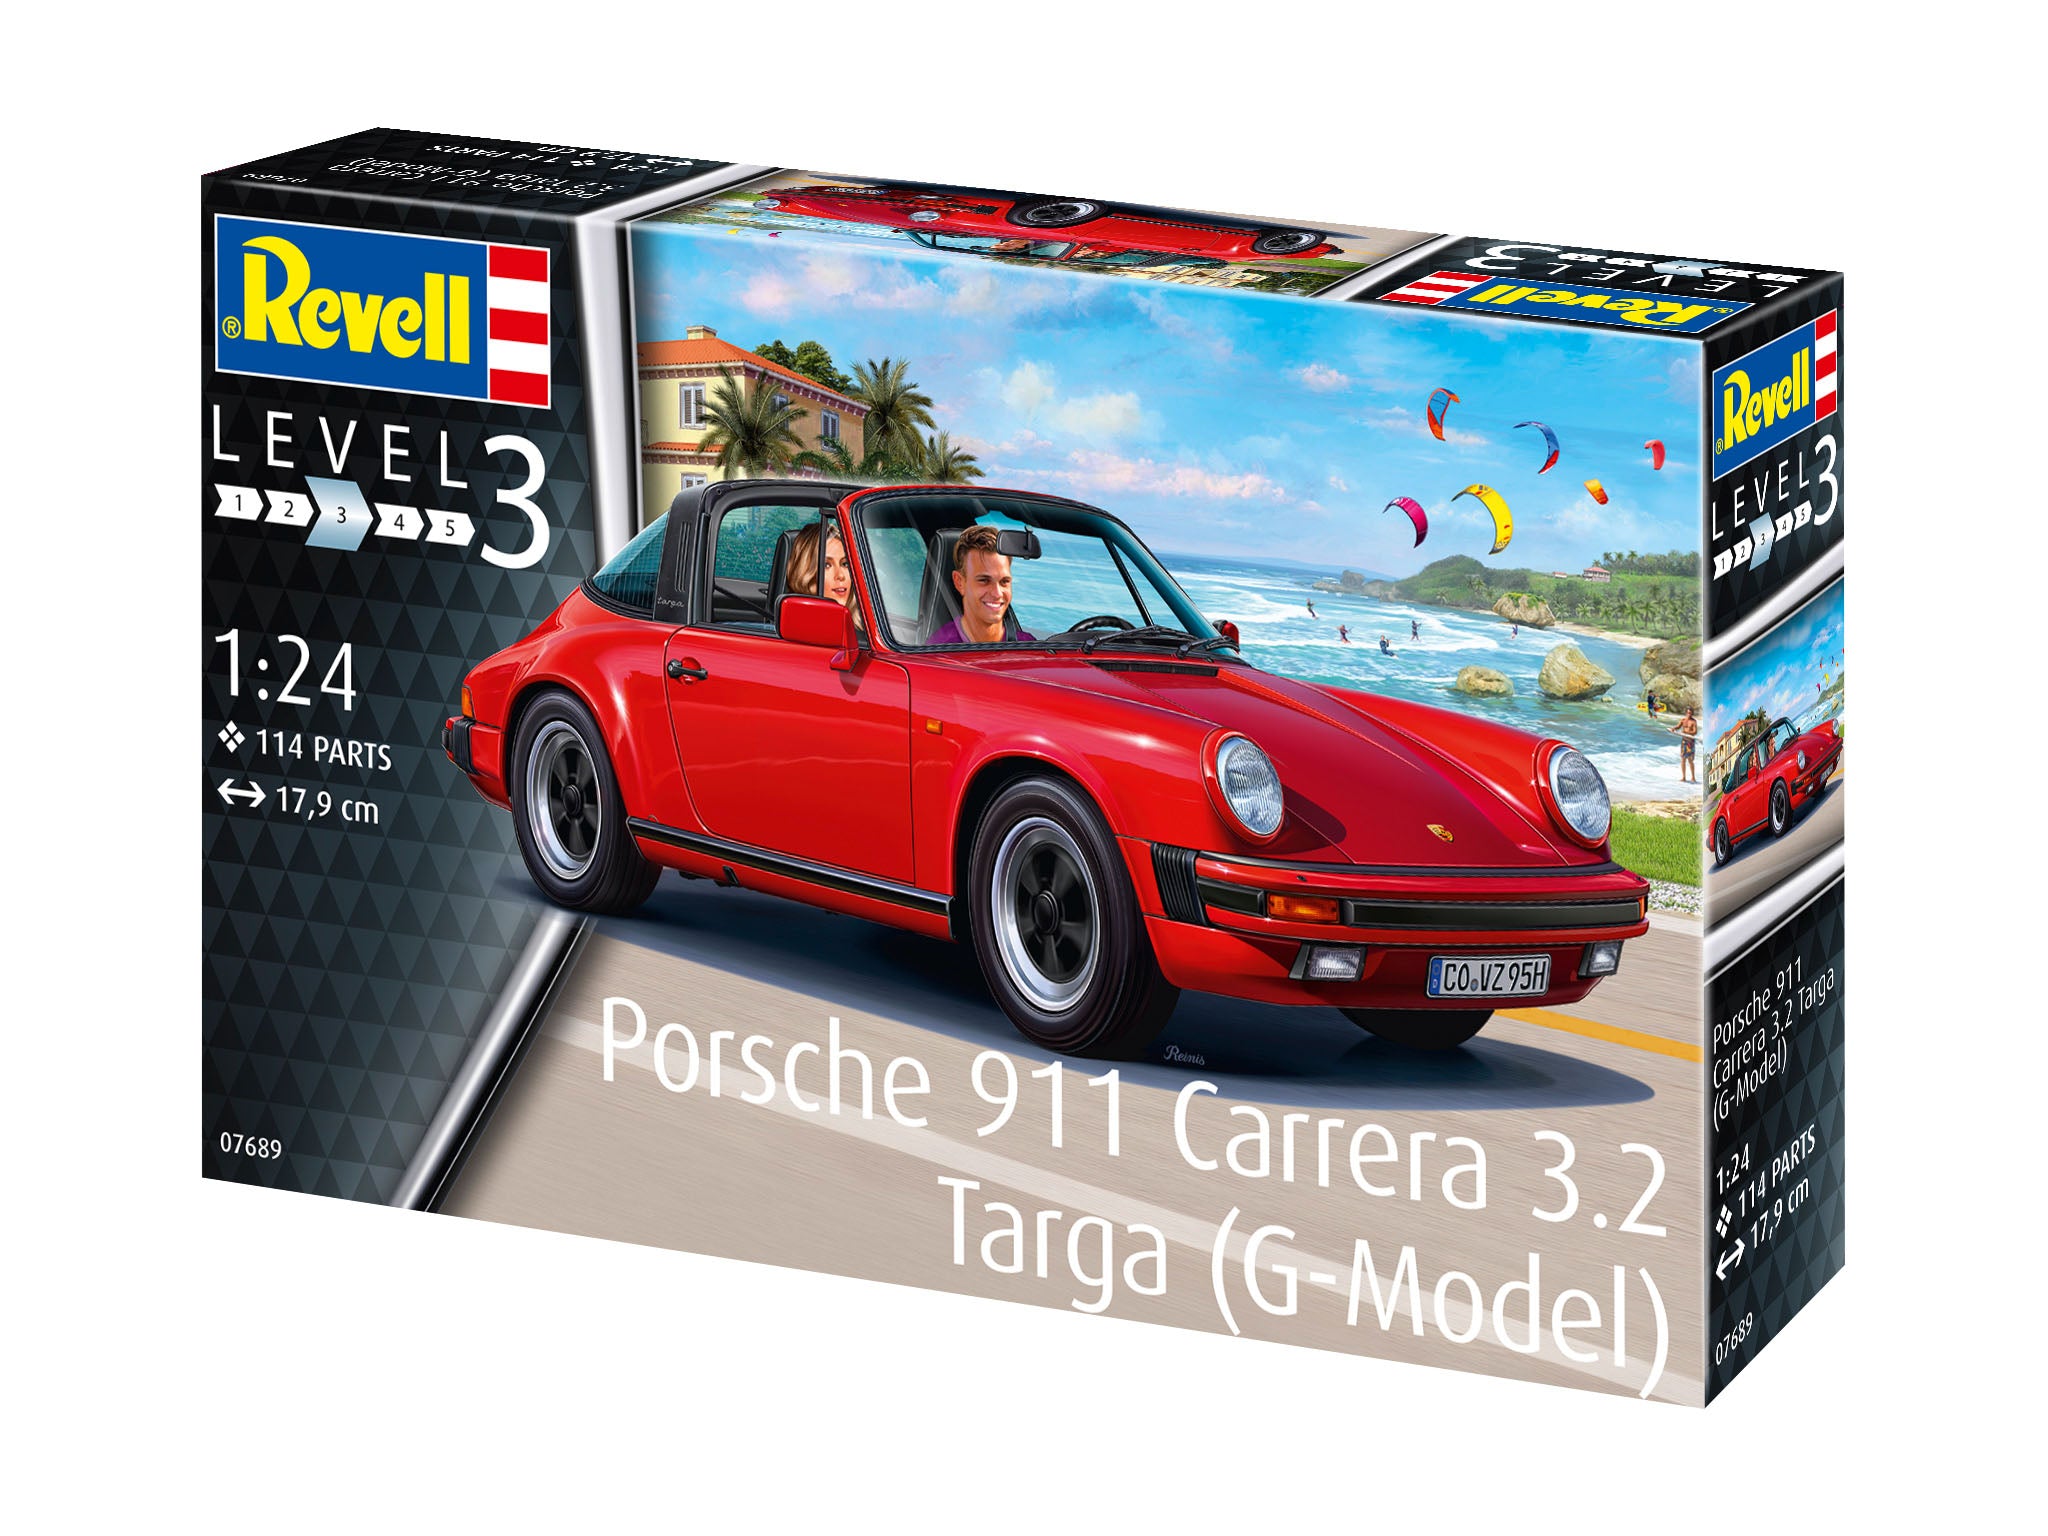 Porsche 911 Carrera 3.2 Targa 1:24 Scale Kit